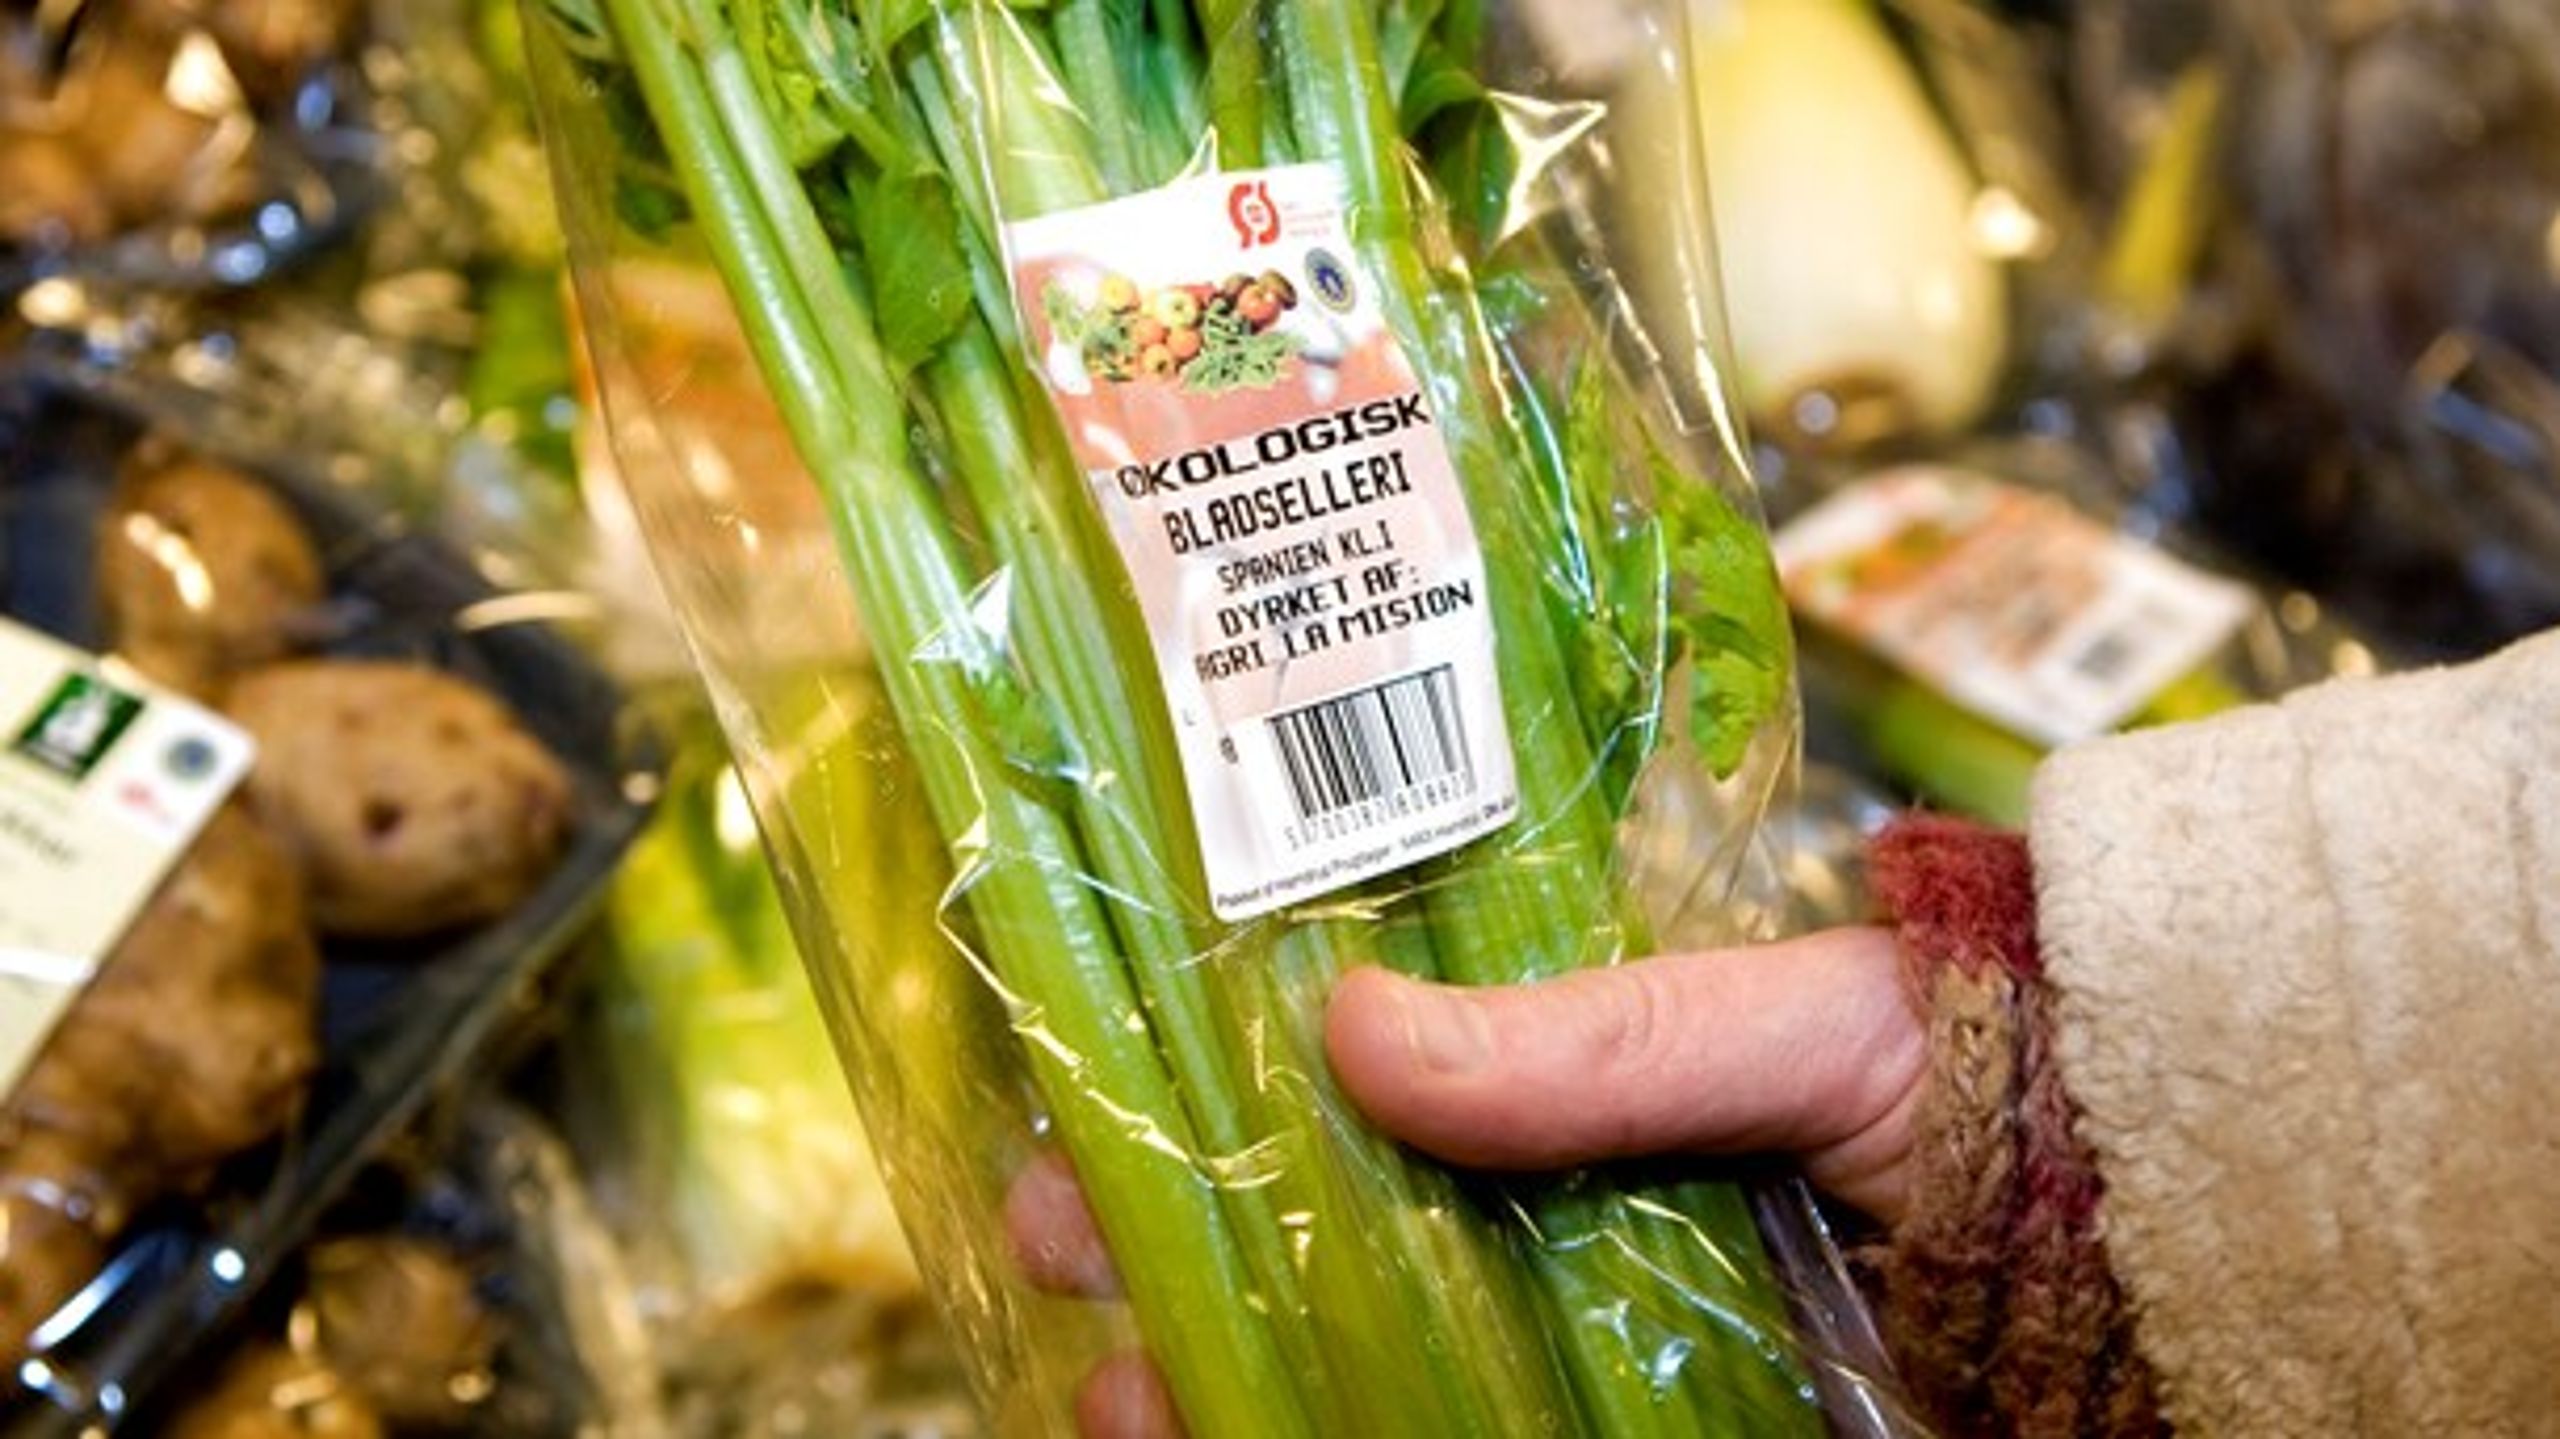 Hvis det røde ø-mærke var forbeholdt danske produkter, kunne mærket medvirke til bedre forbrugeroplysning og understøtte de danske forbrugeres præference for danske grøntsager, skriver Bjarne Pugholm.